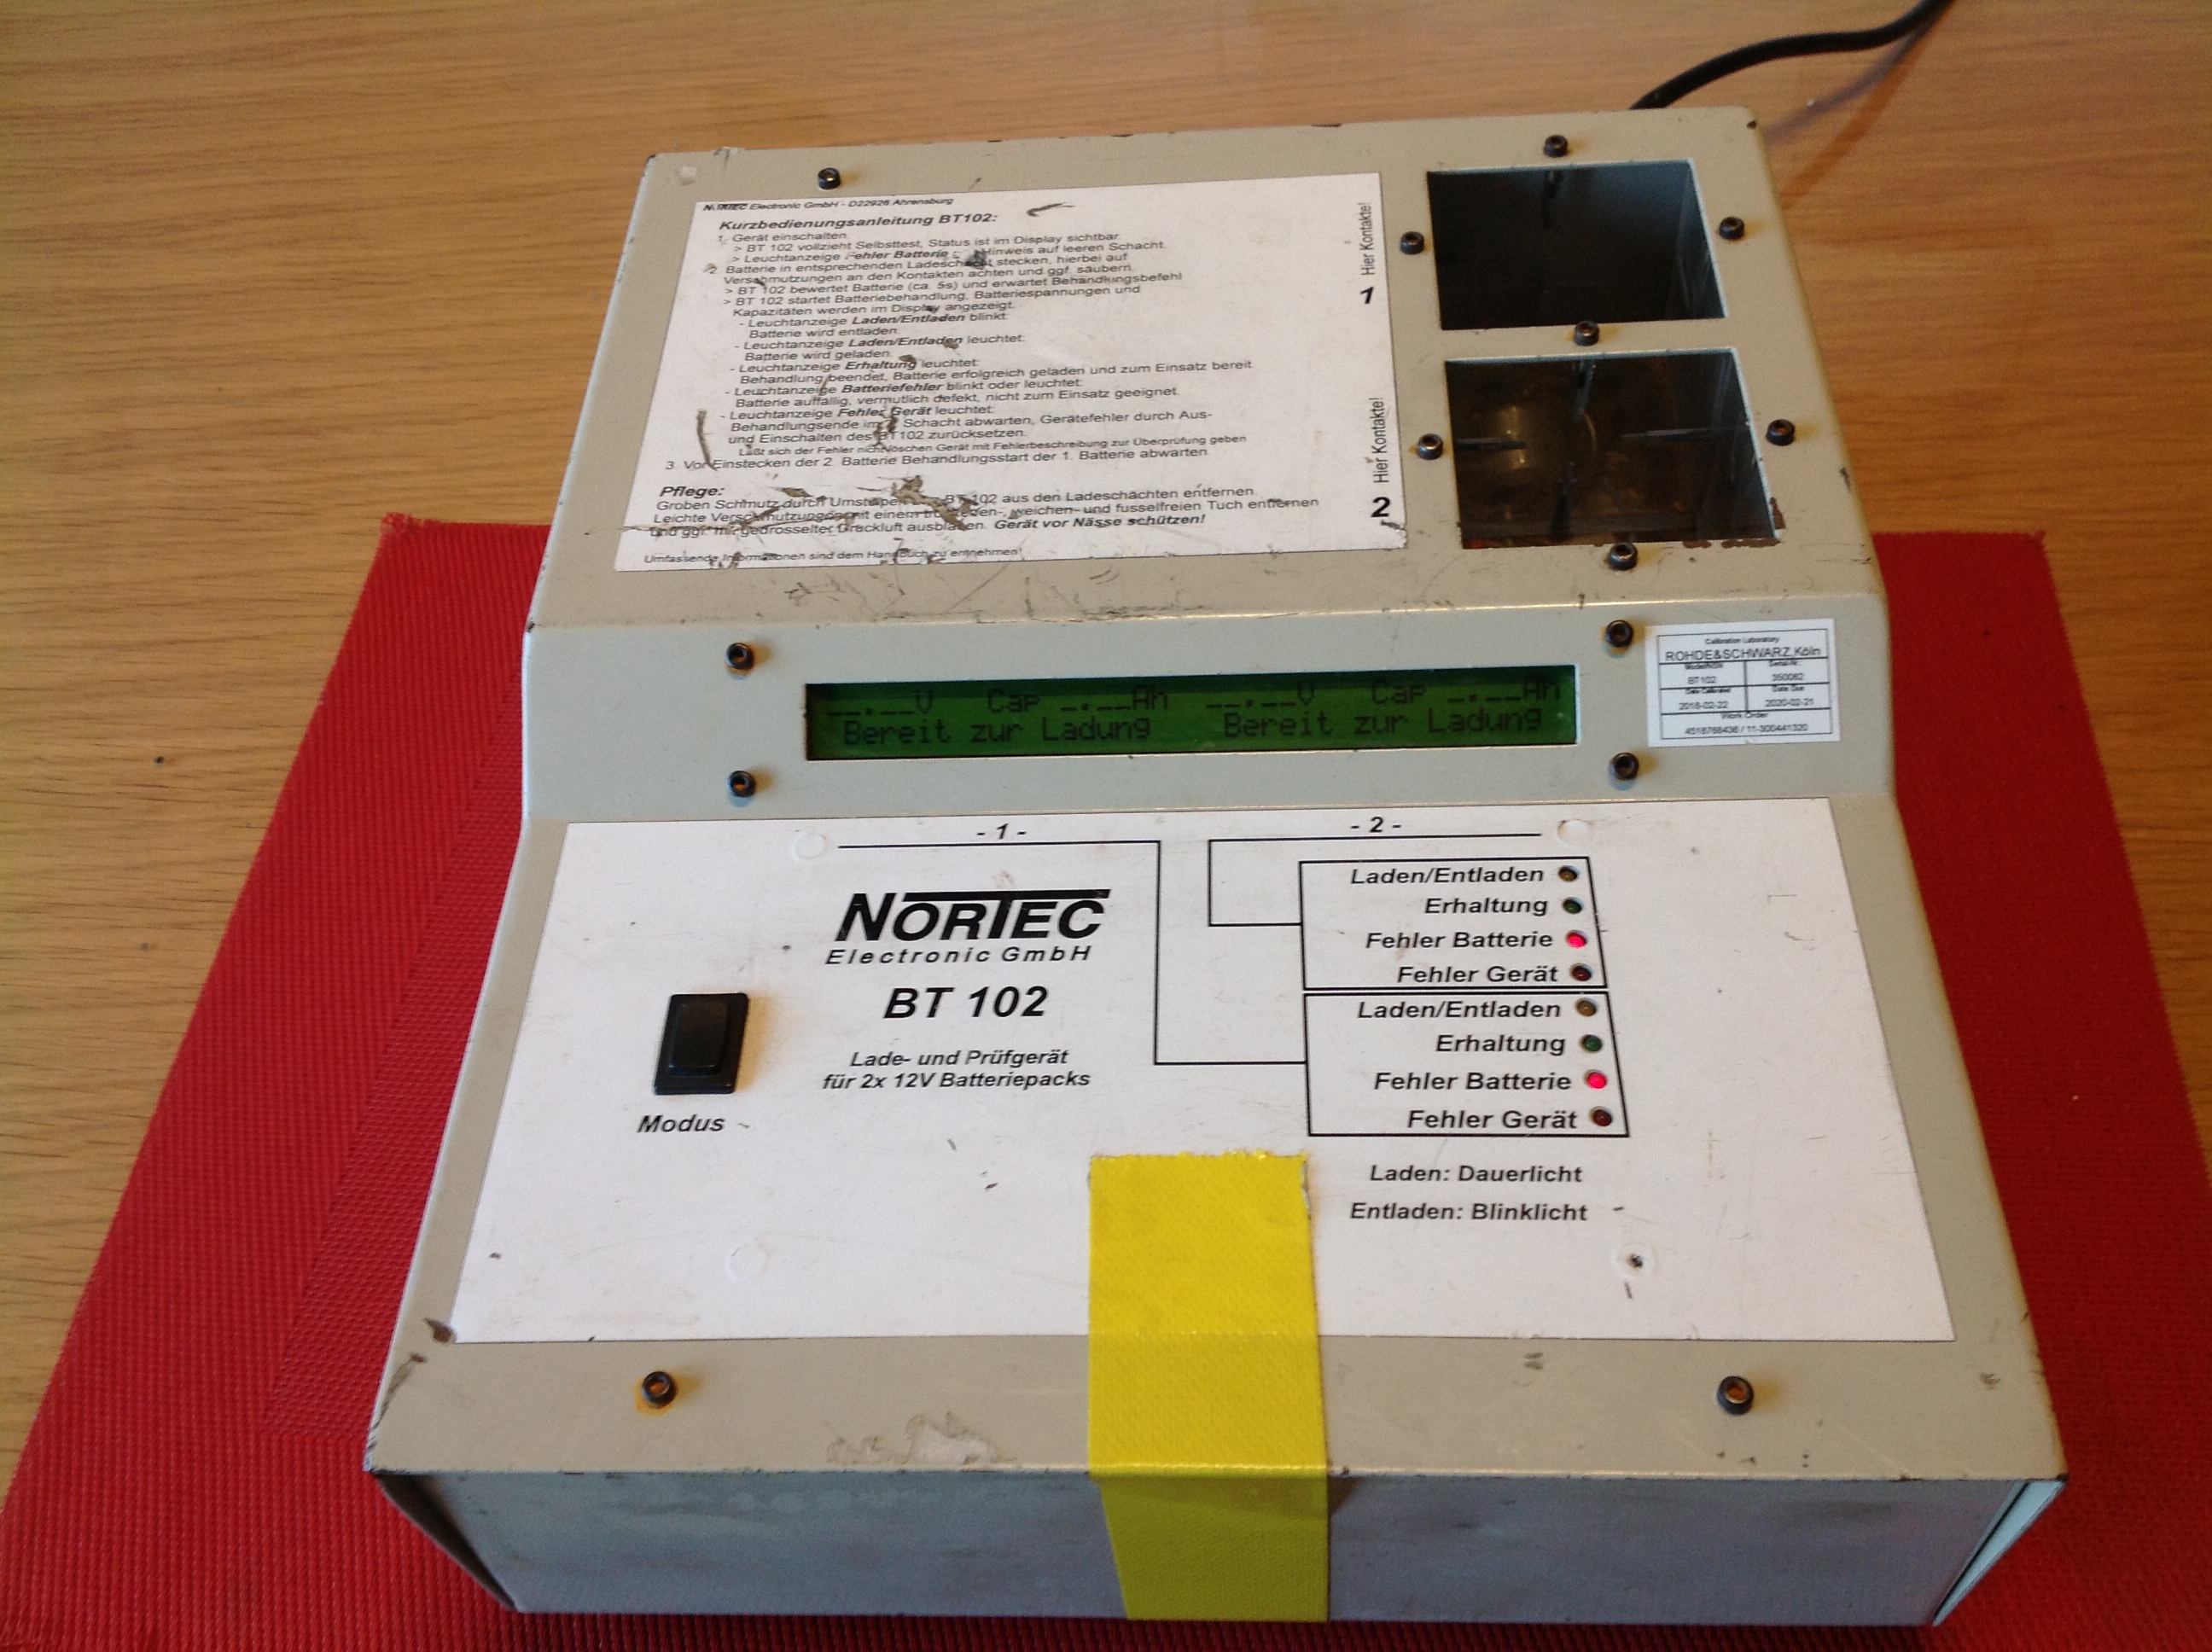 Nortec BT 102, Batterie, Lade- und Prüfgerät für 2 x 12V Batteriepacks